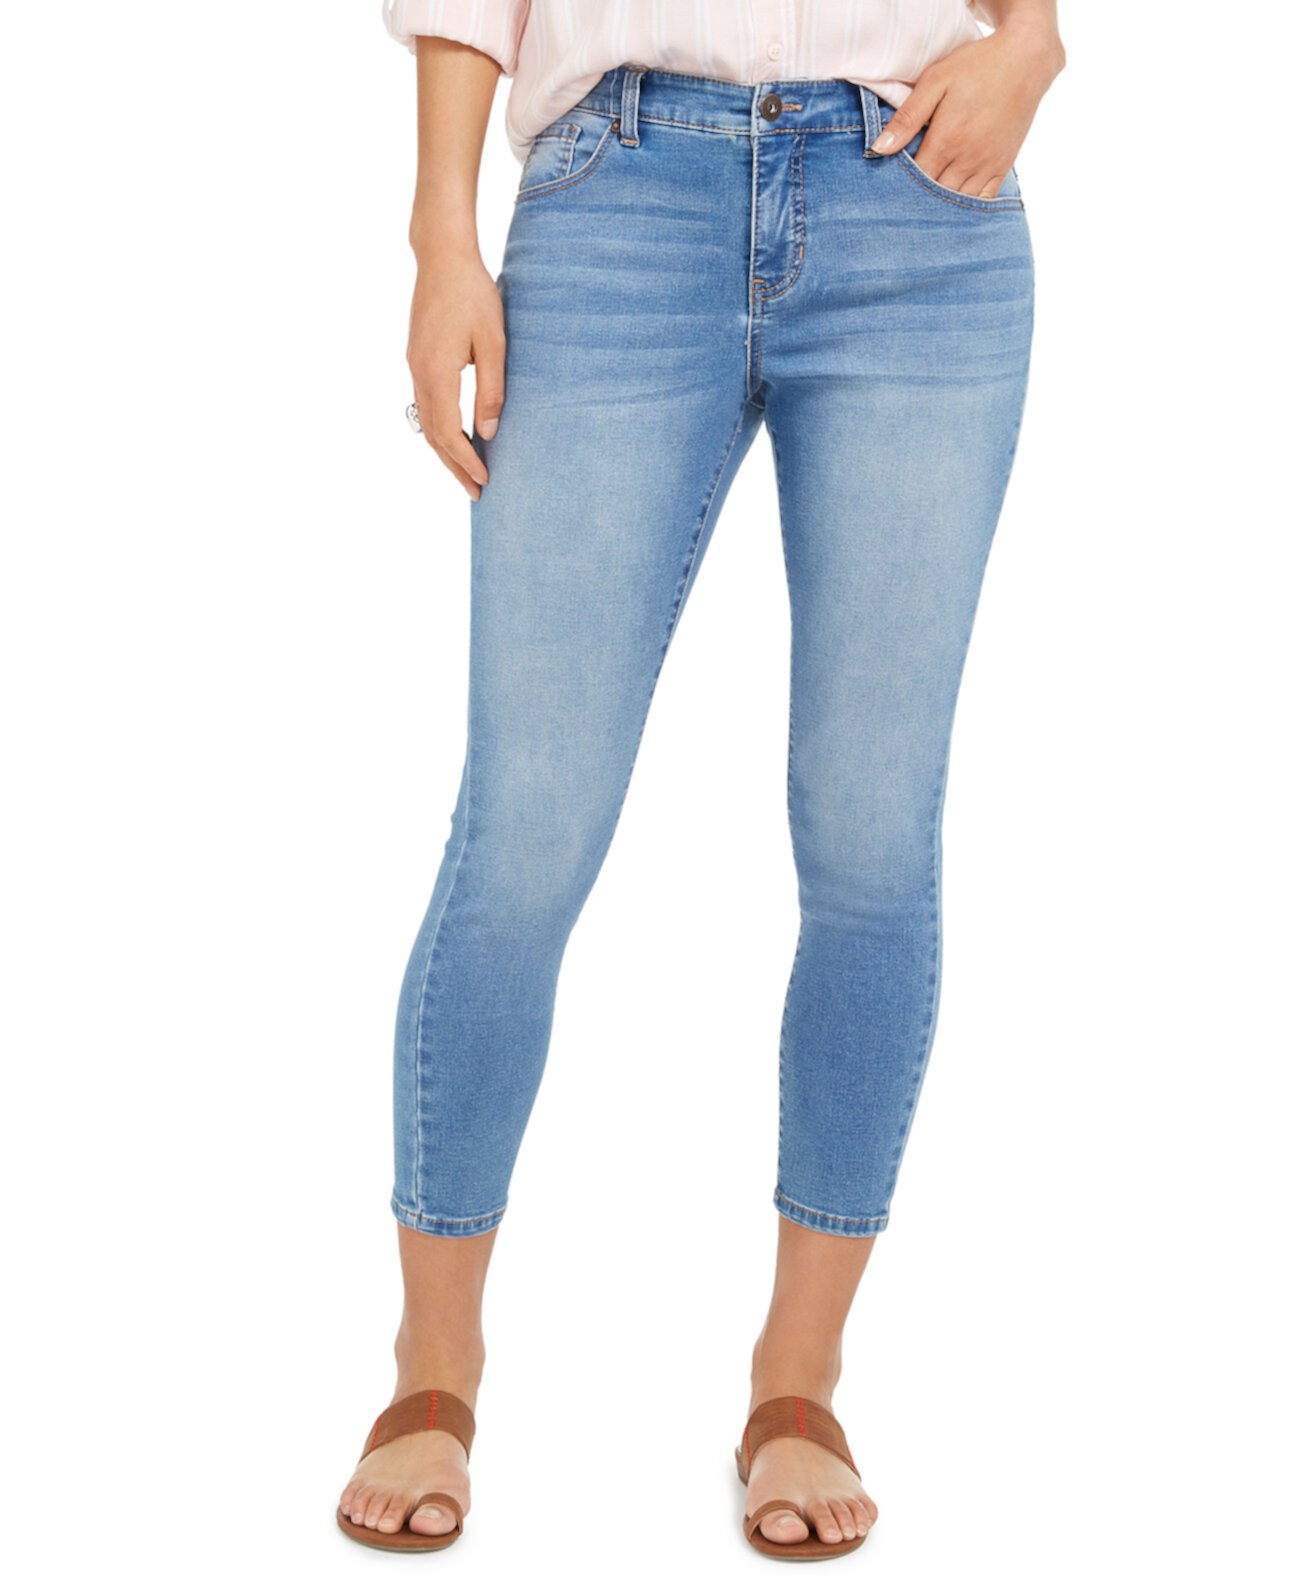 Пышные соблазнительные джинсы скинни Petite Power, созданные для Macy's Style & Co